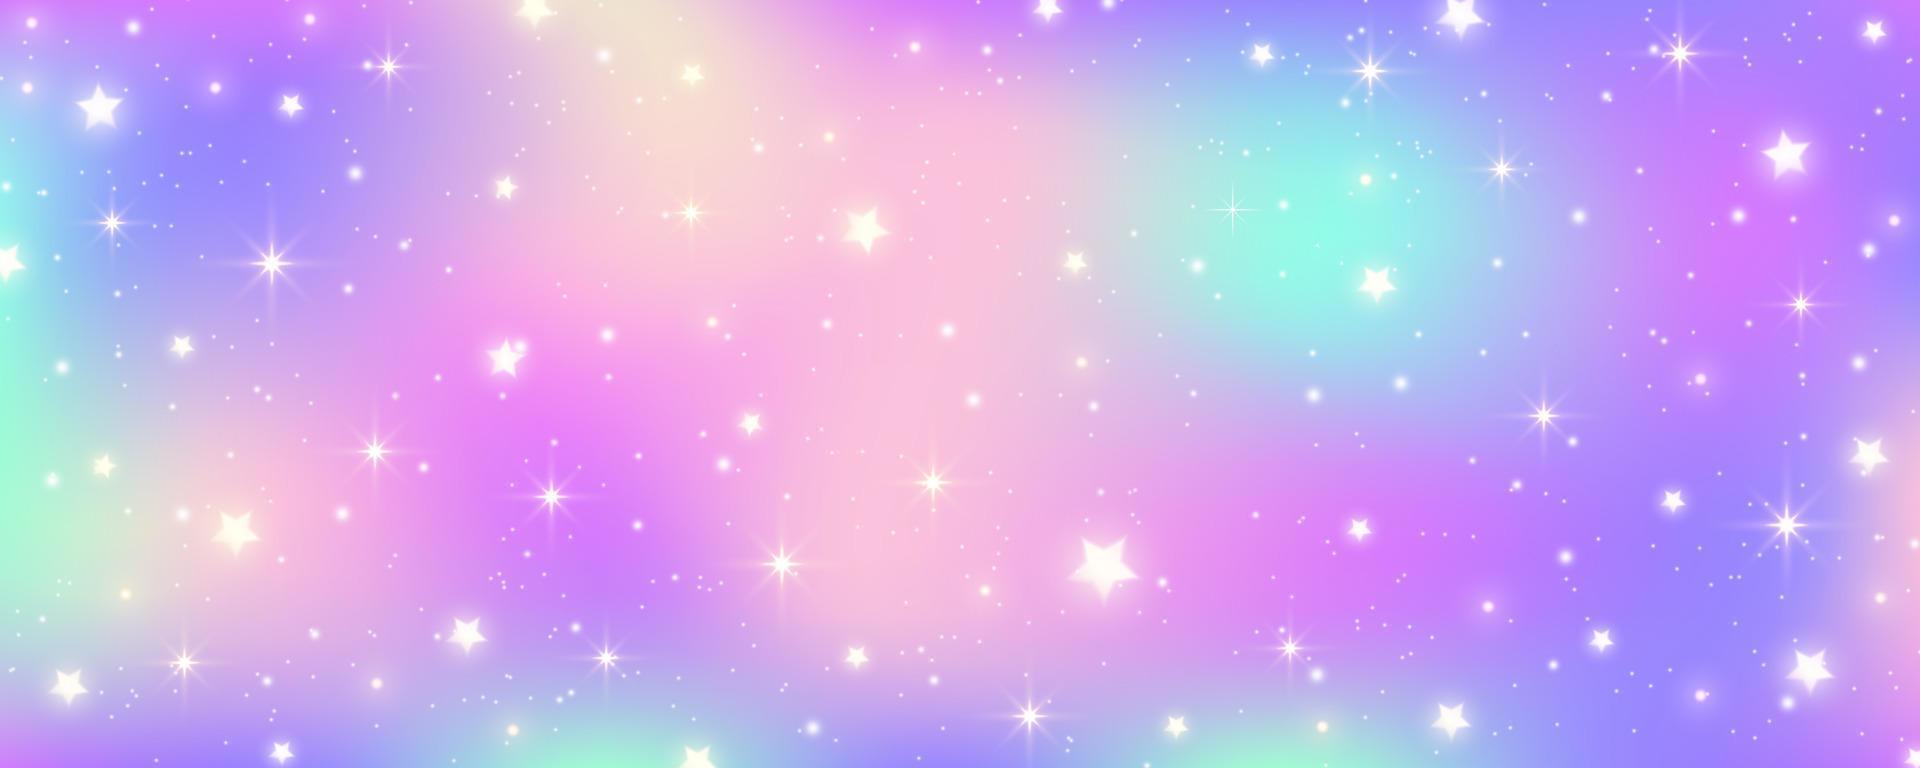 Regenbogen Pastell- Hintergrund. Einhorn Himmel mit glänzend Himmel. Süßigkeiten Galaxis mit Aquarell Licht Textur. mädchenhaft süß Magie Hintergrund. holographisch Vektor abstrakt Illustration.